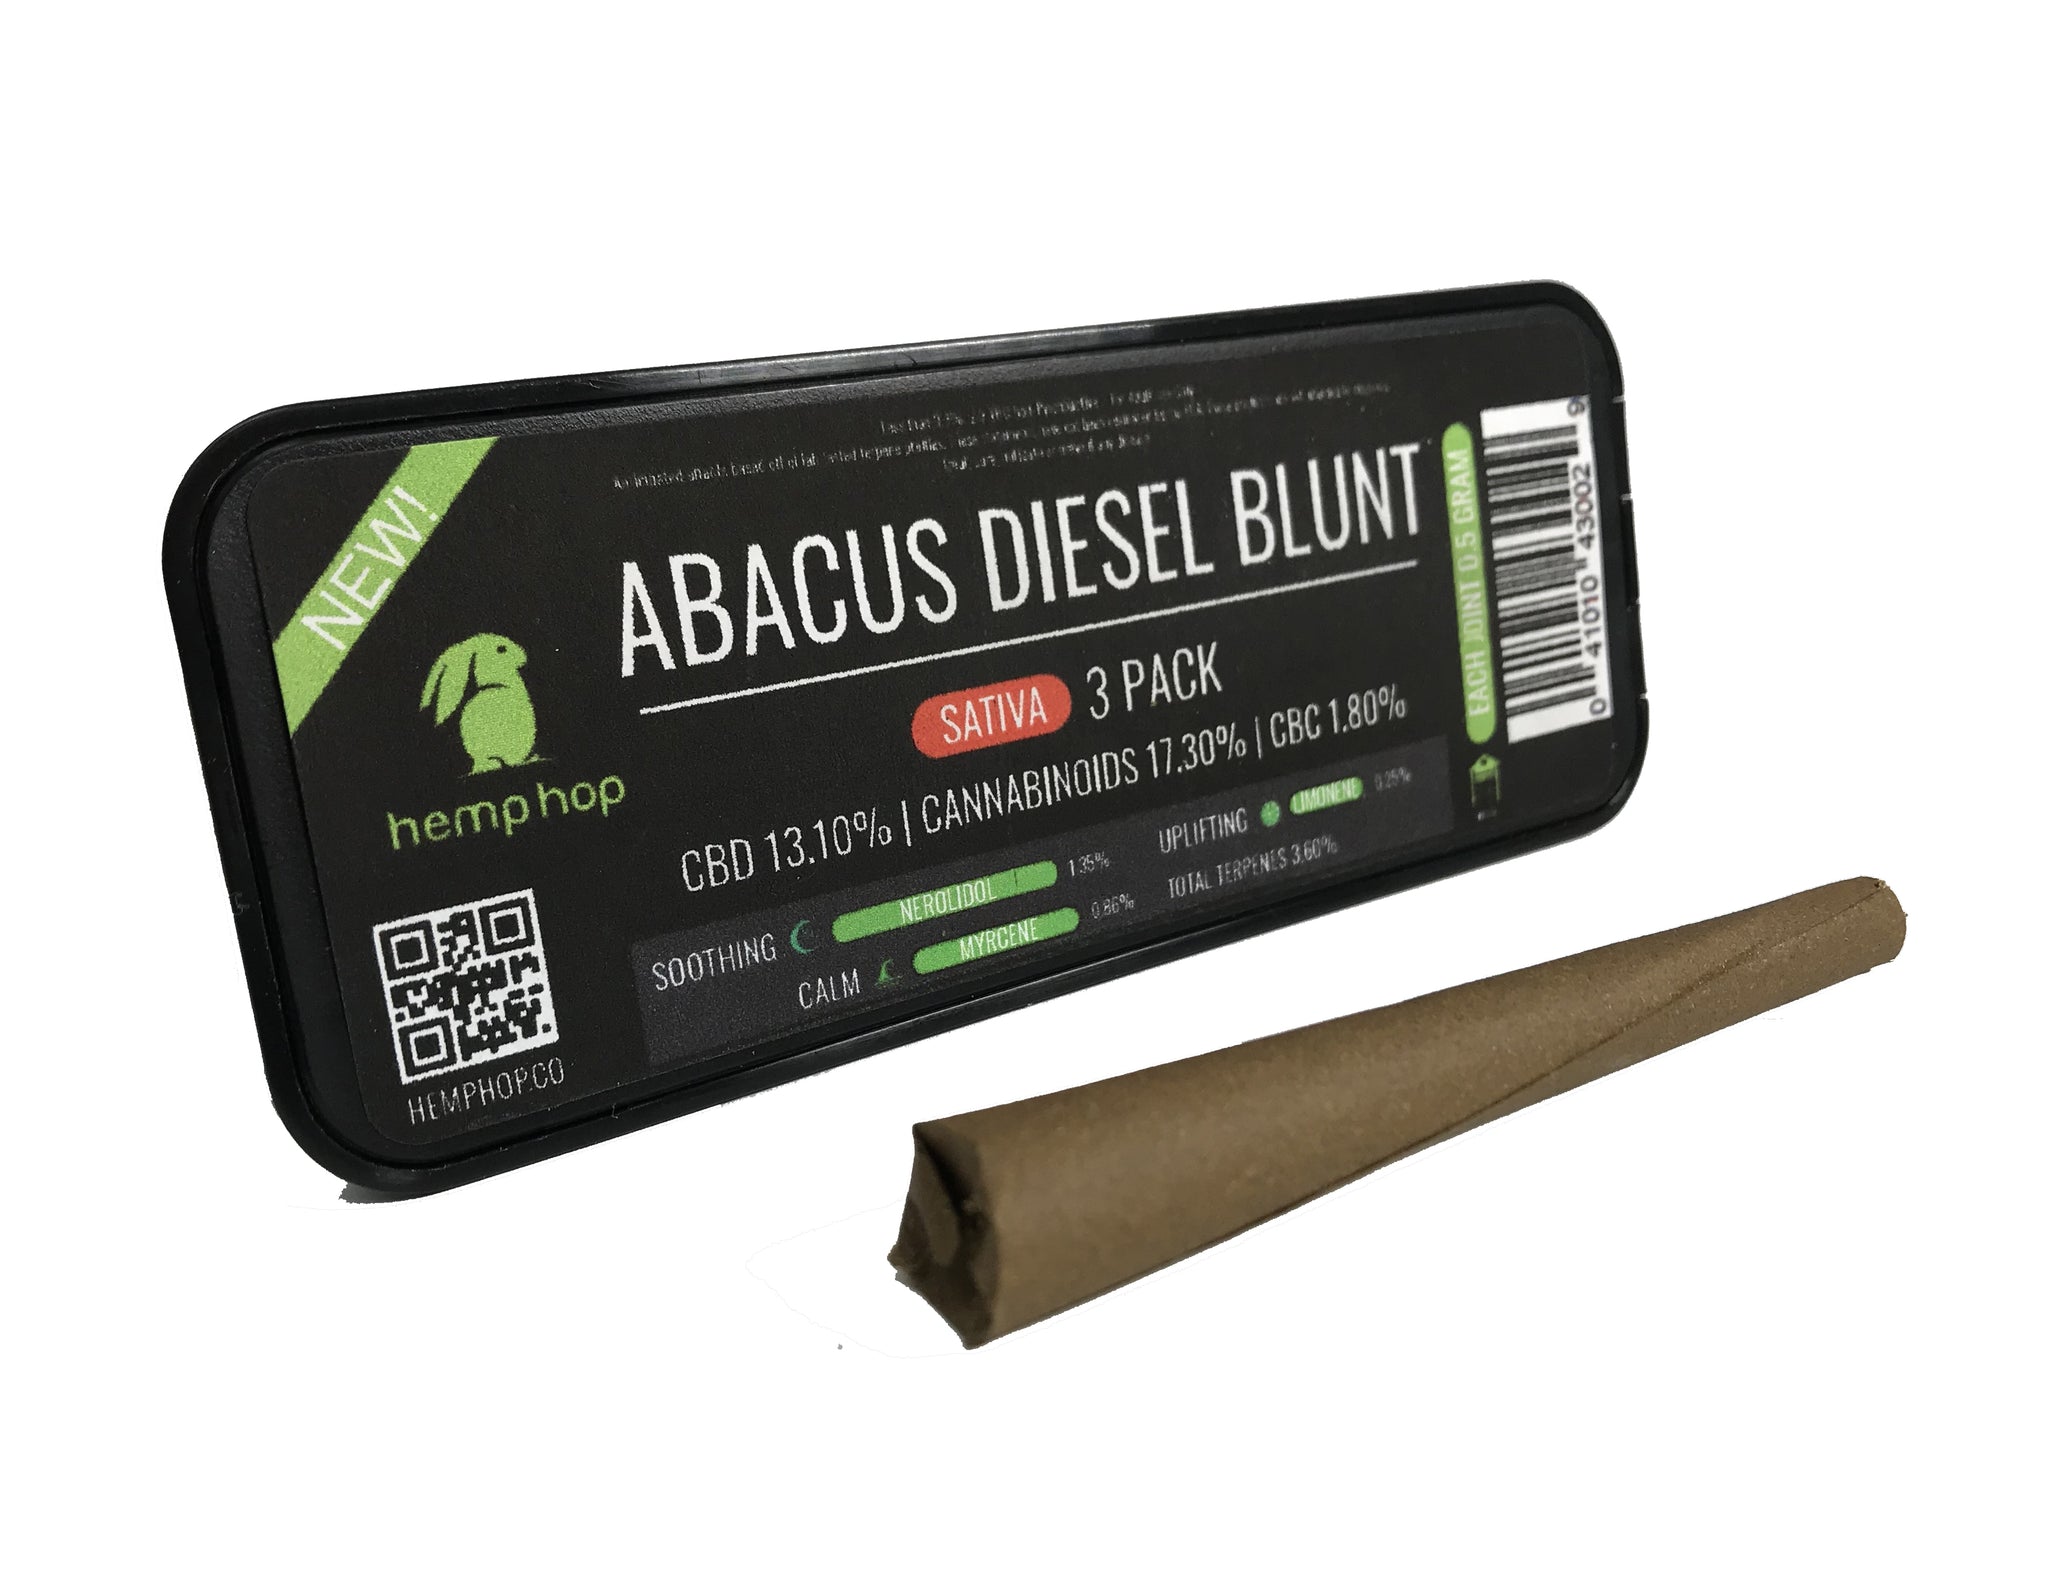 Abacus Diesel Blunts 3 Pack